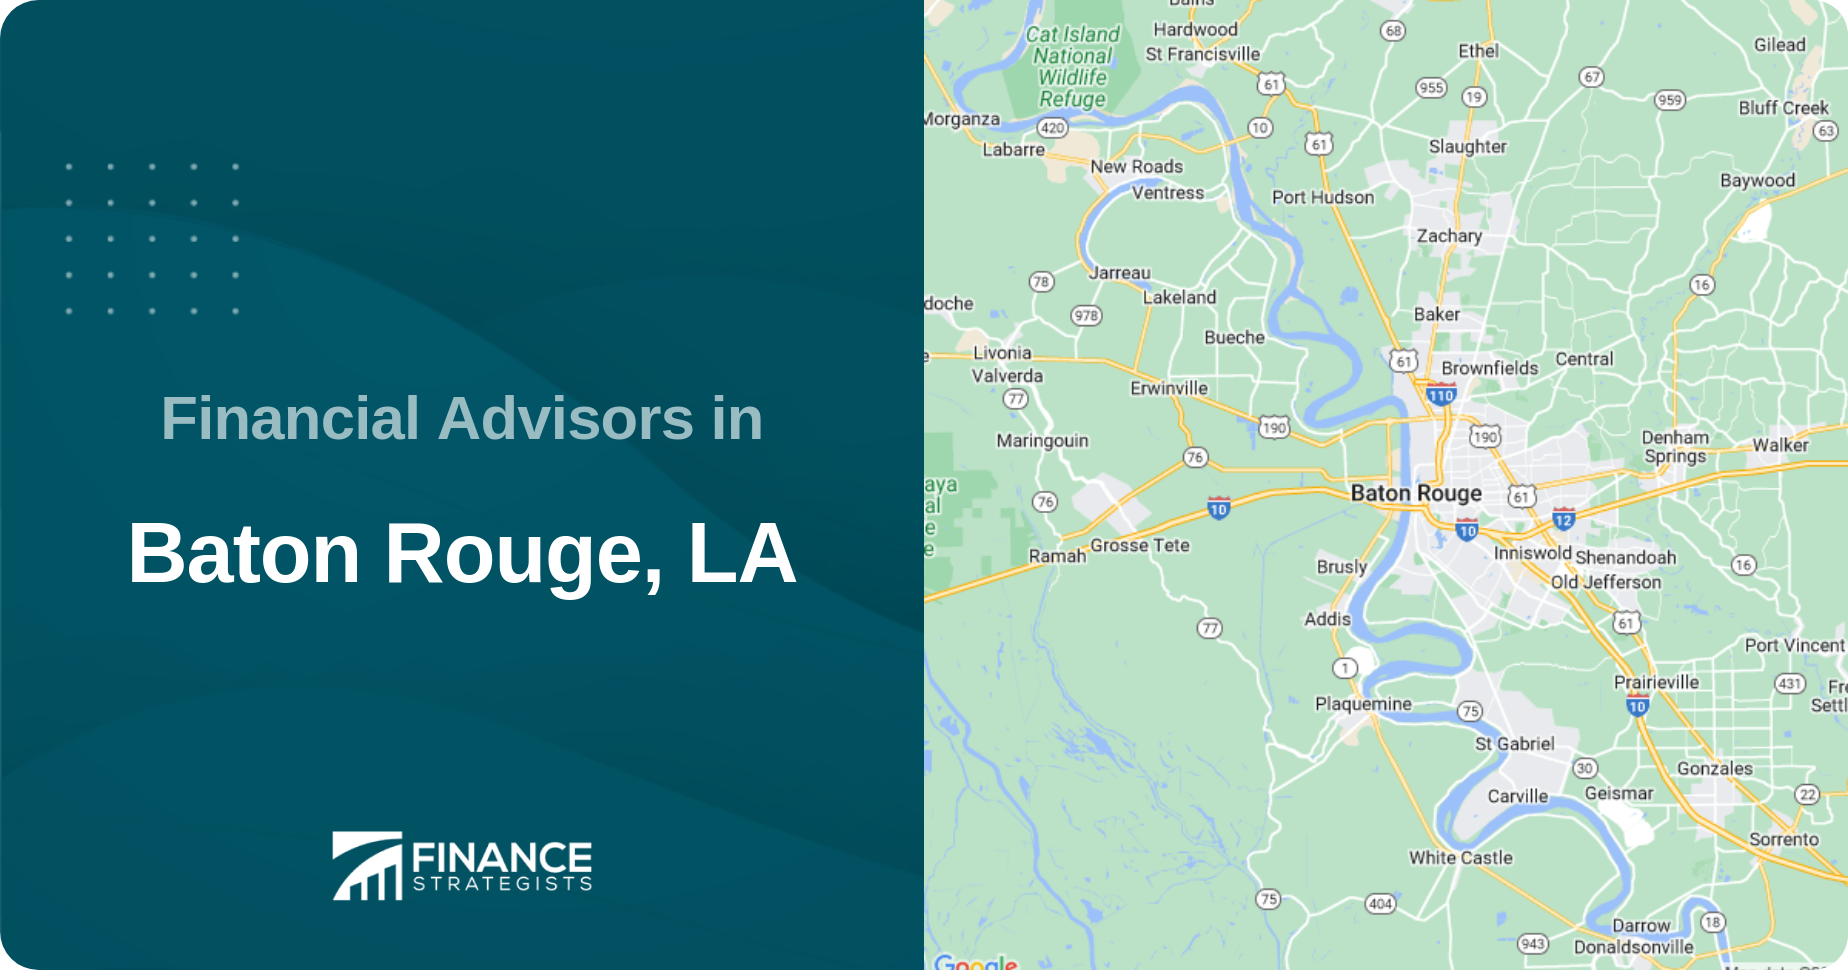 Financial Advisors in Baton Rouge, LA